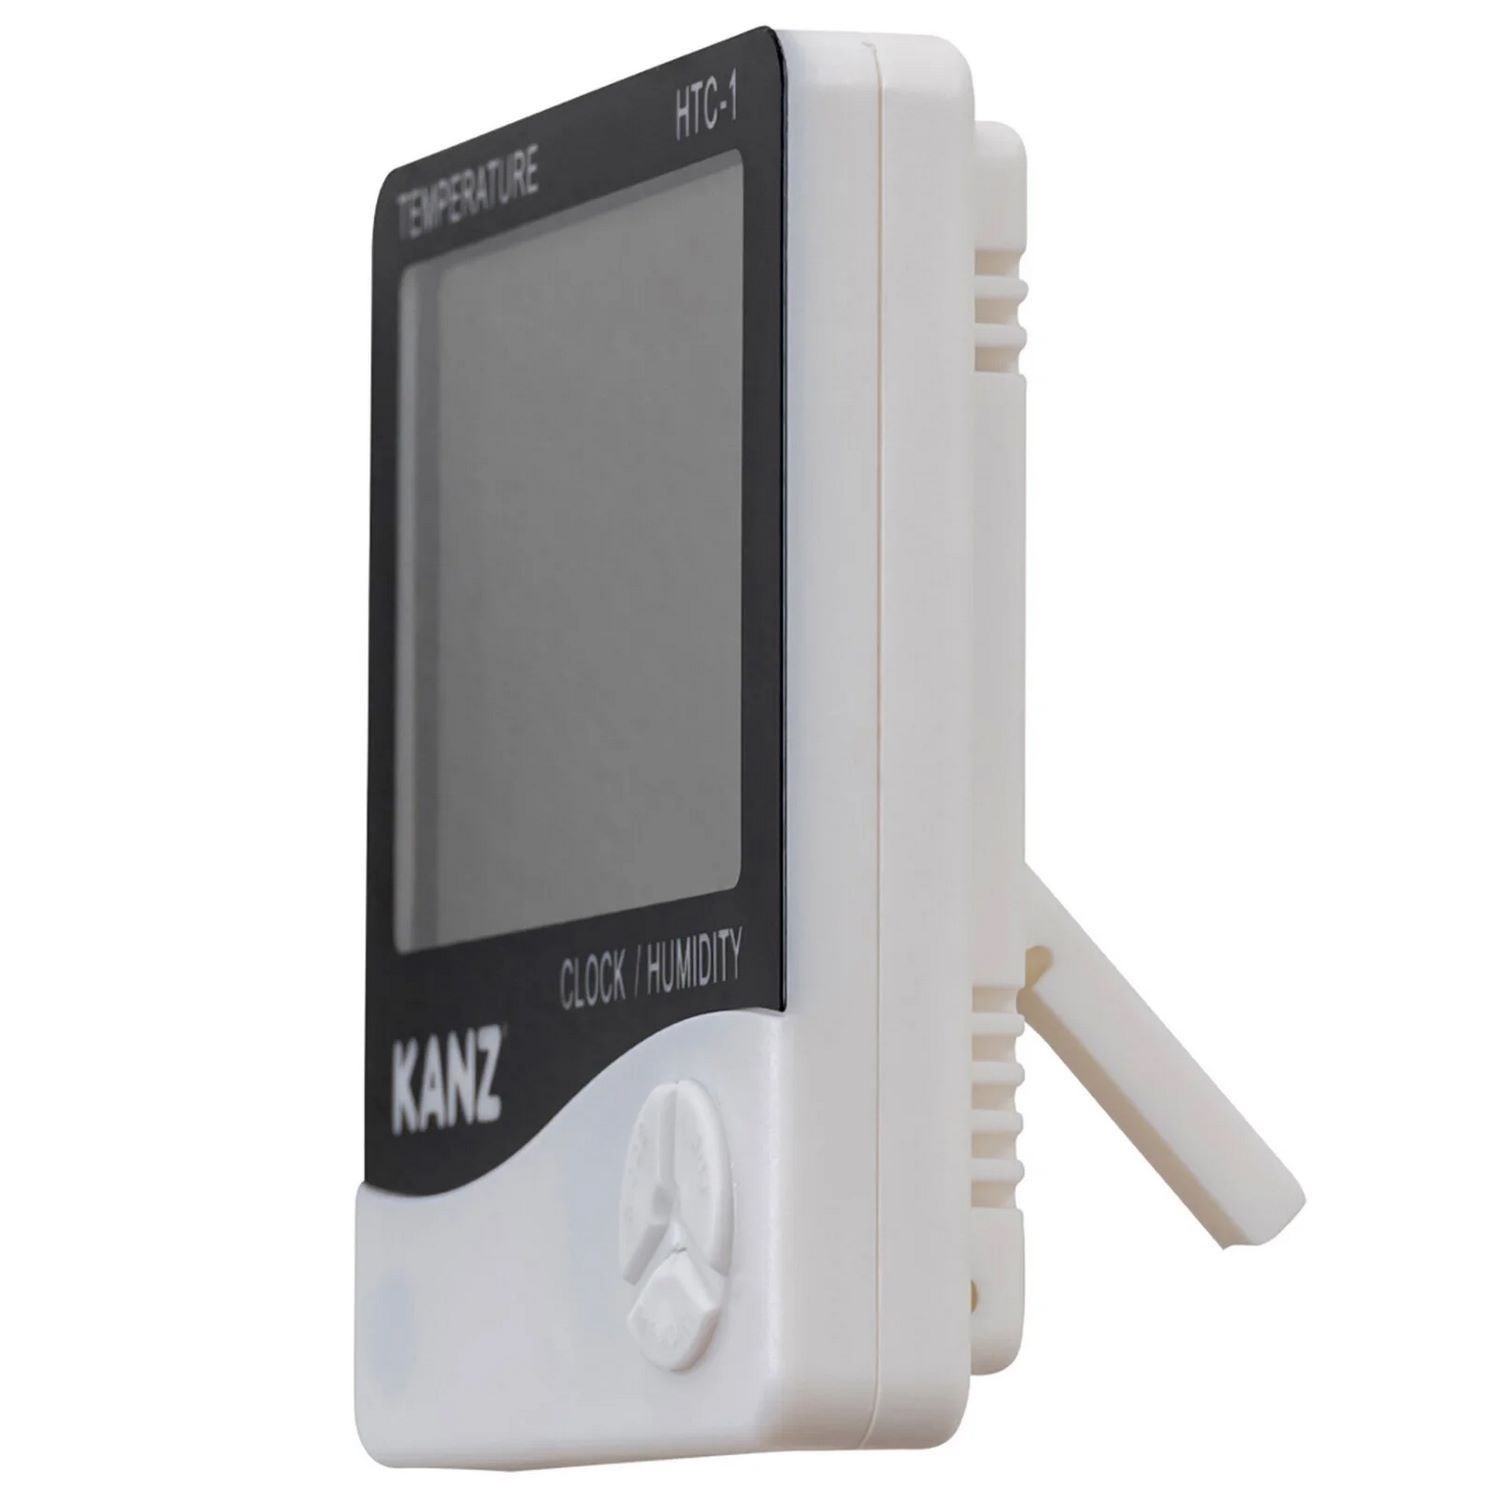 Kanz Hygrometre-Termometre HTC-1 Beyaz